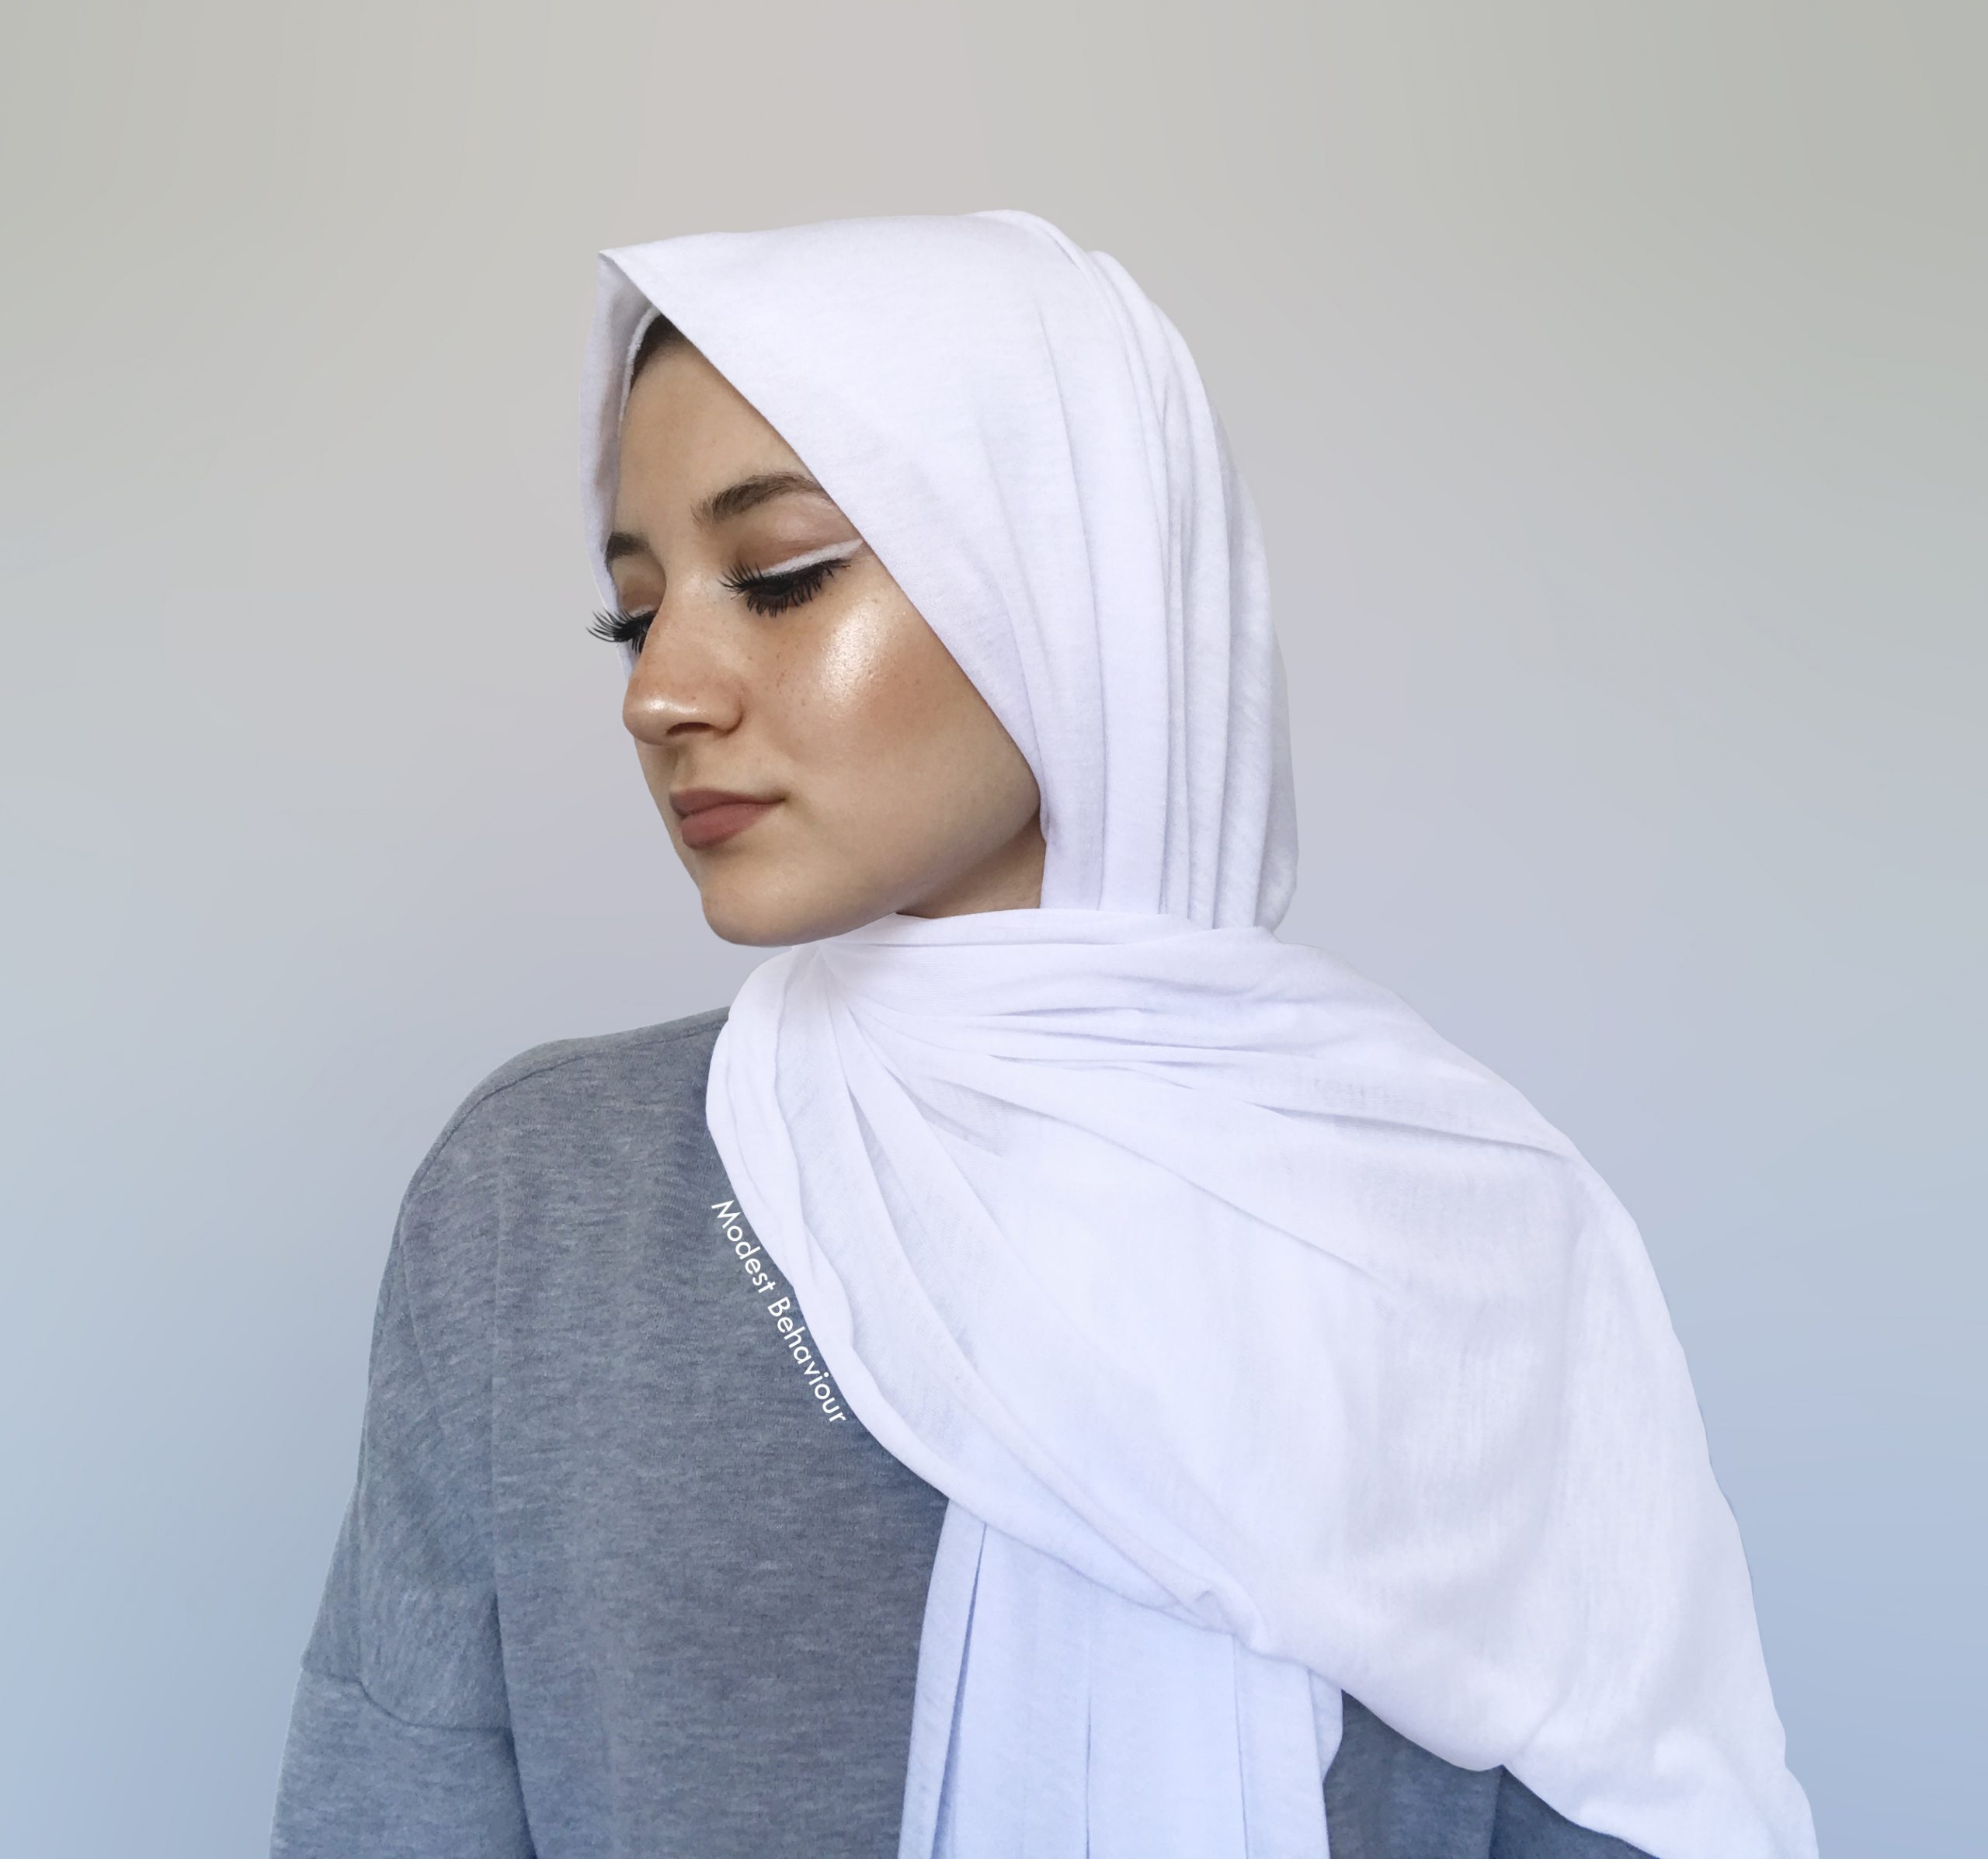 Hijab Safety Pins 8pcs